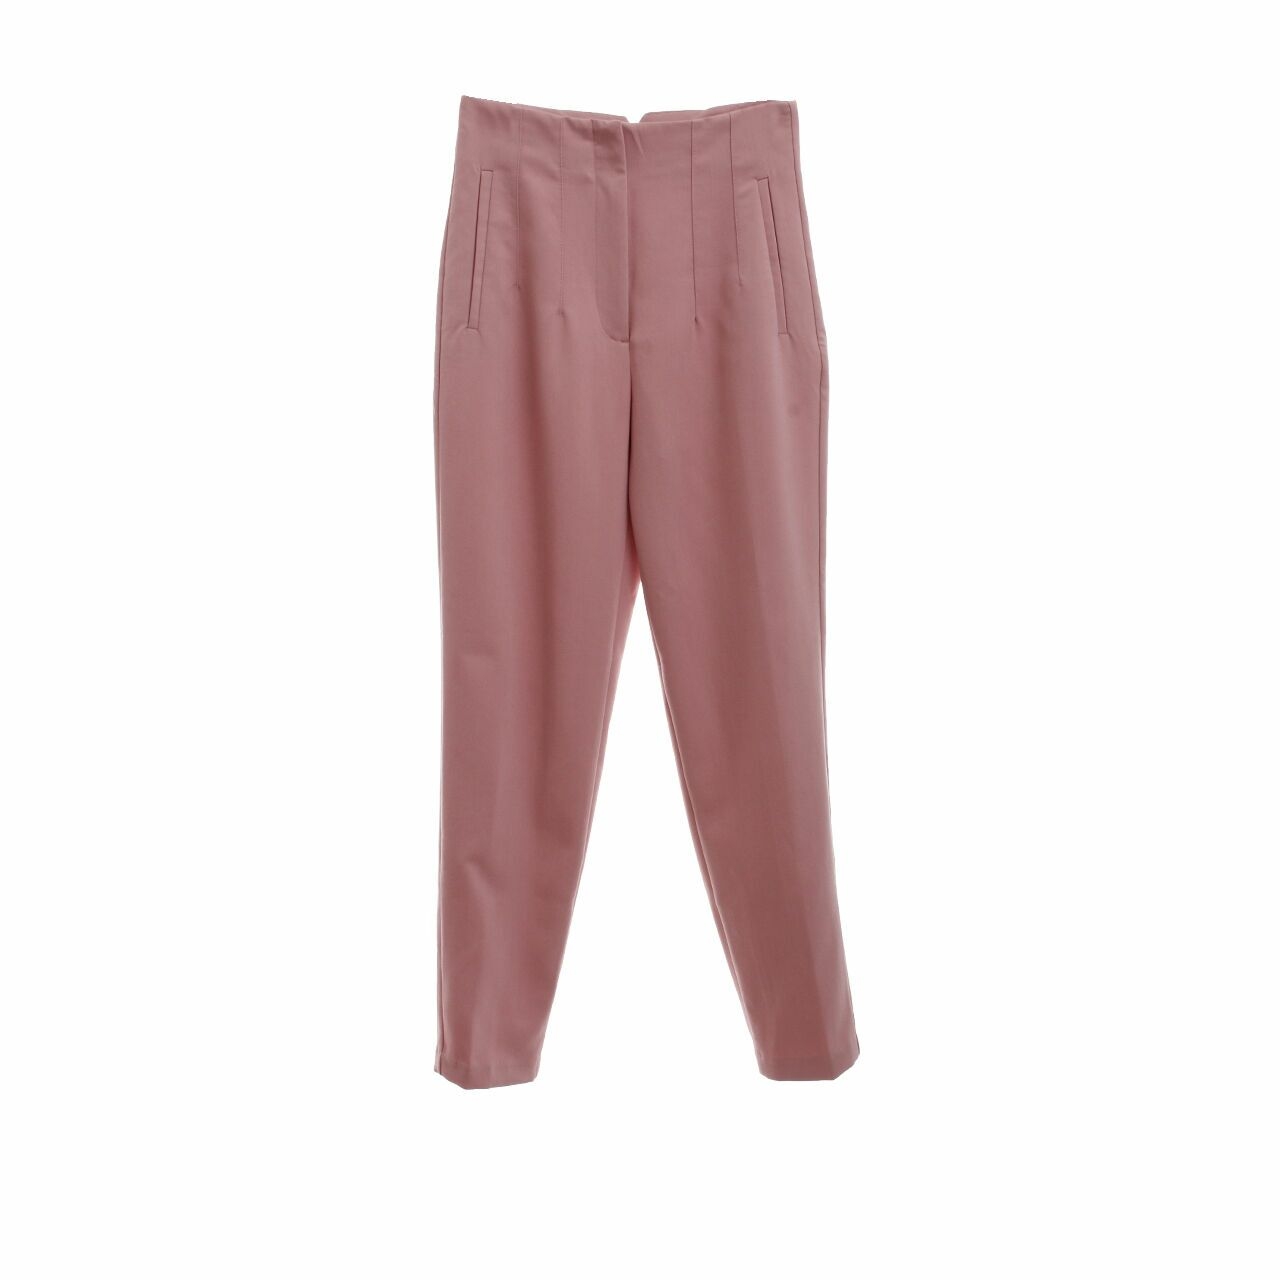 Zara Dusty Pink Long Pants